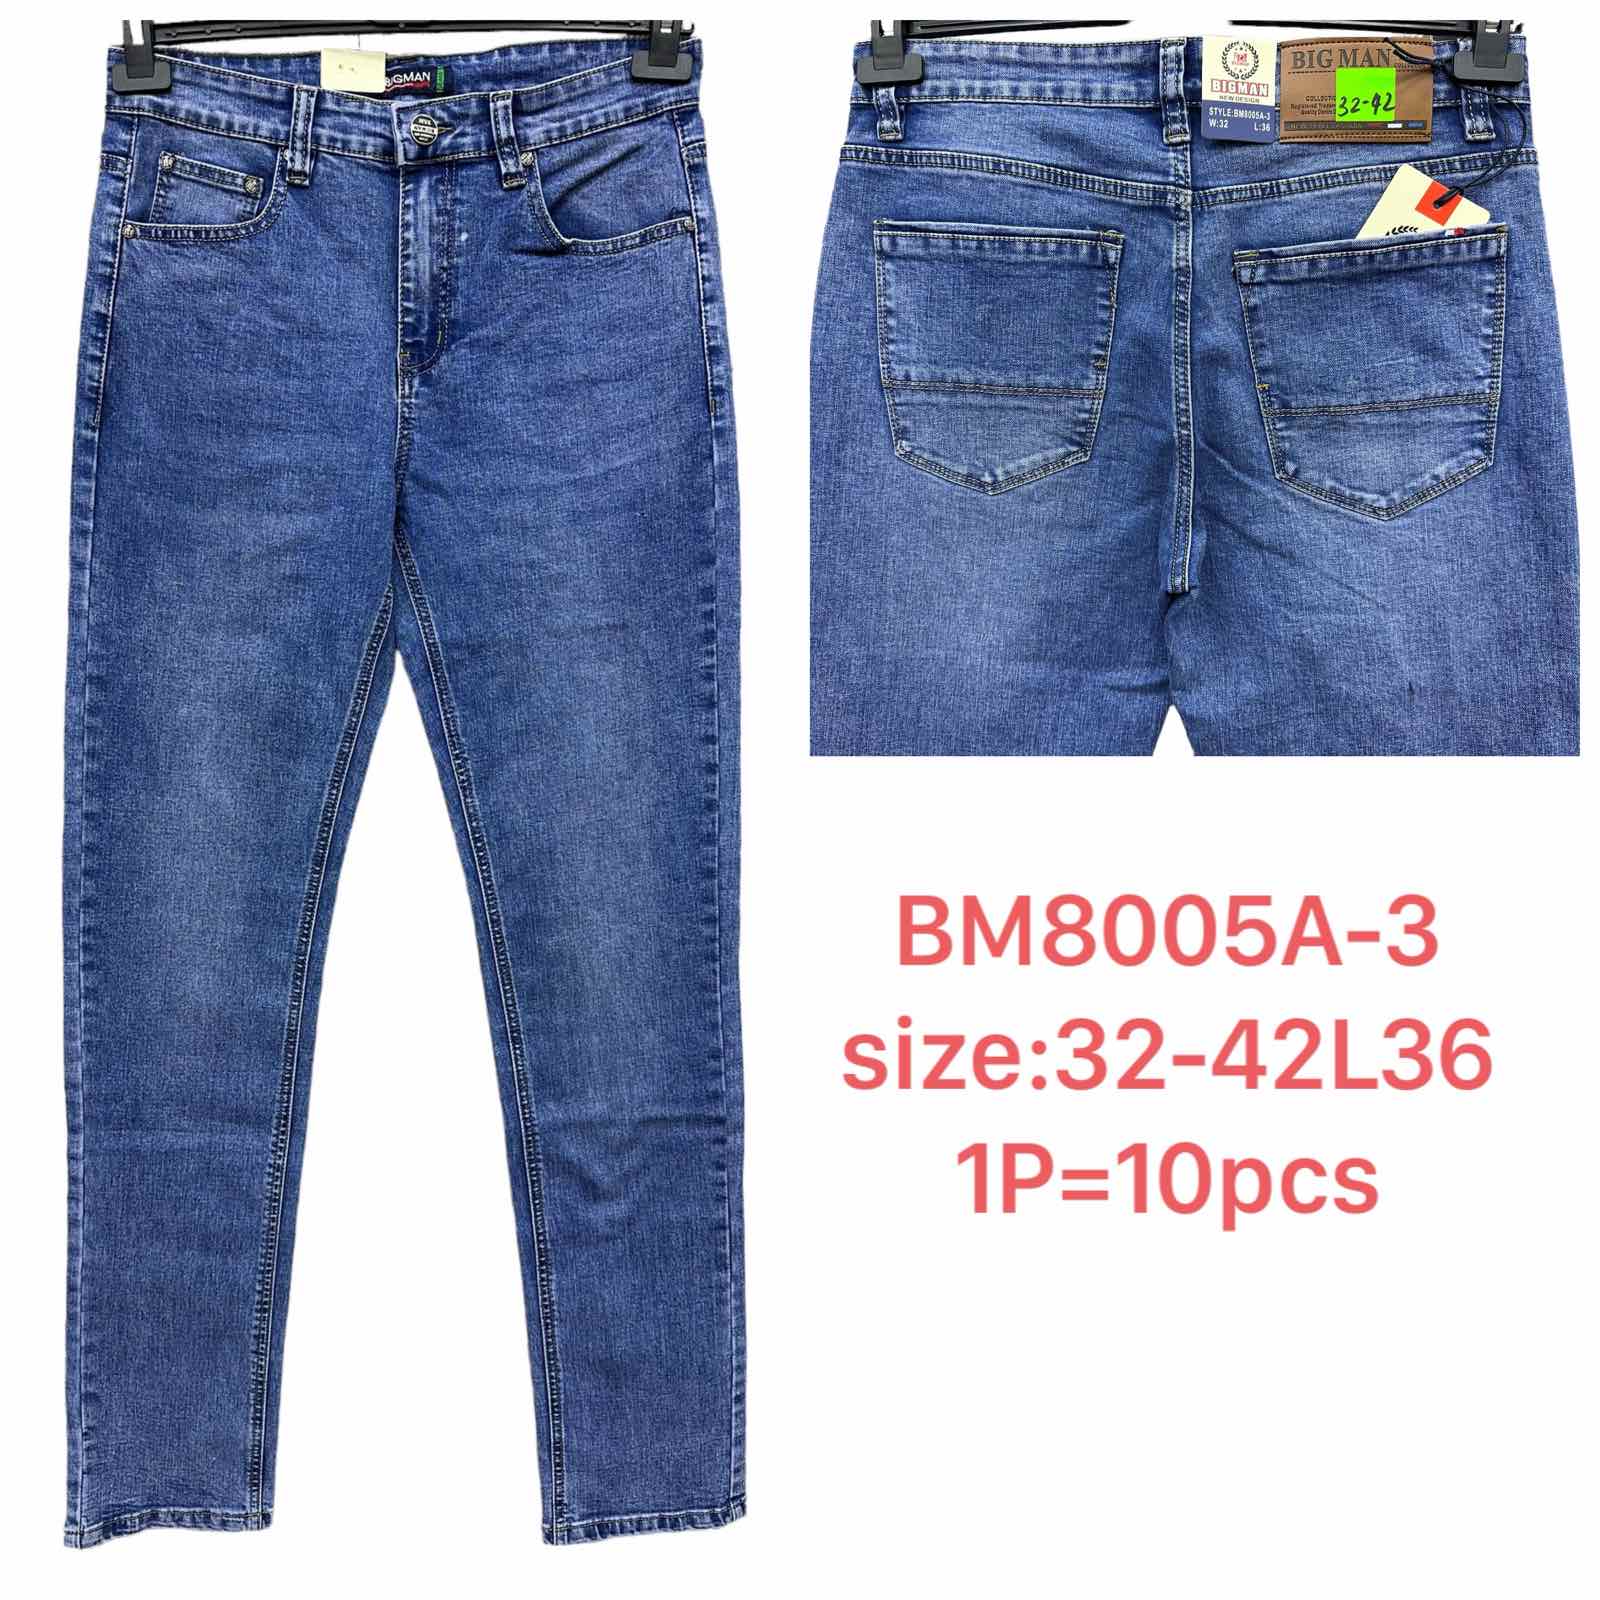 Spodnie meskie jeans  Roz 32-42 L36 Paczka 10szt